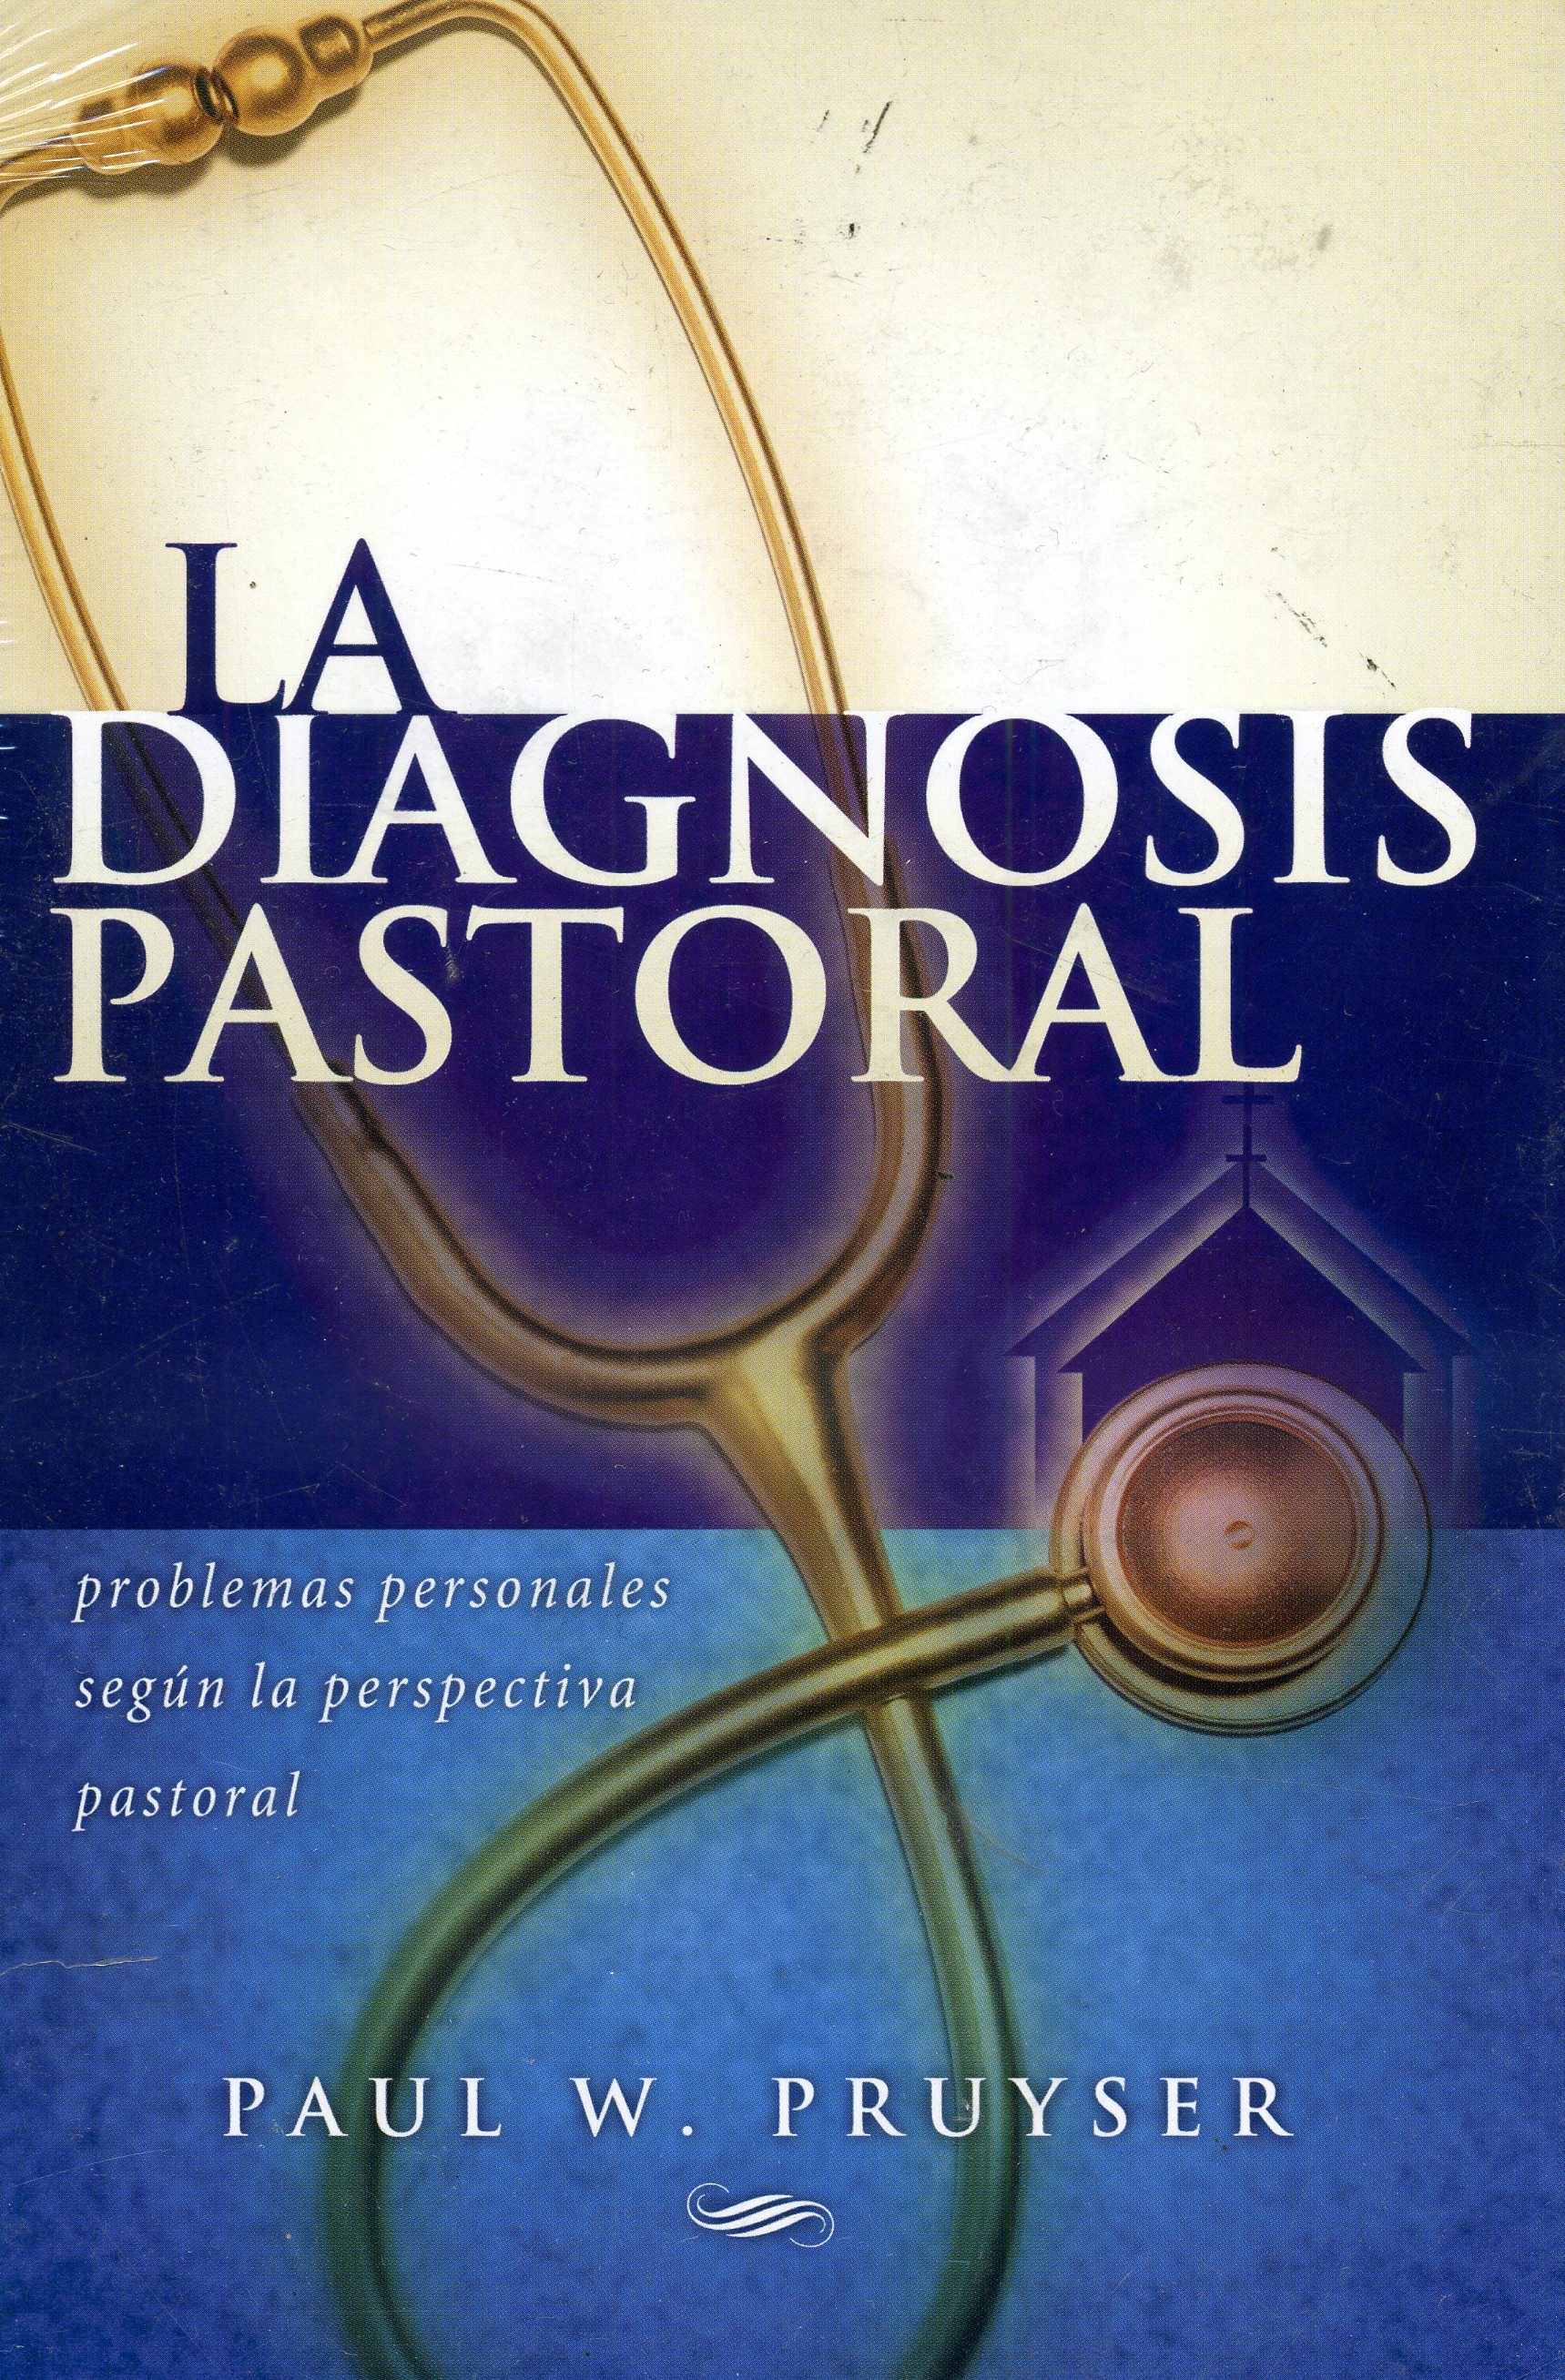 La diagnosis pastoral